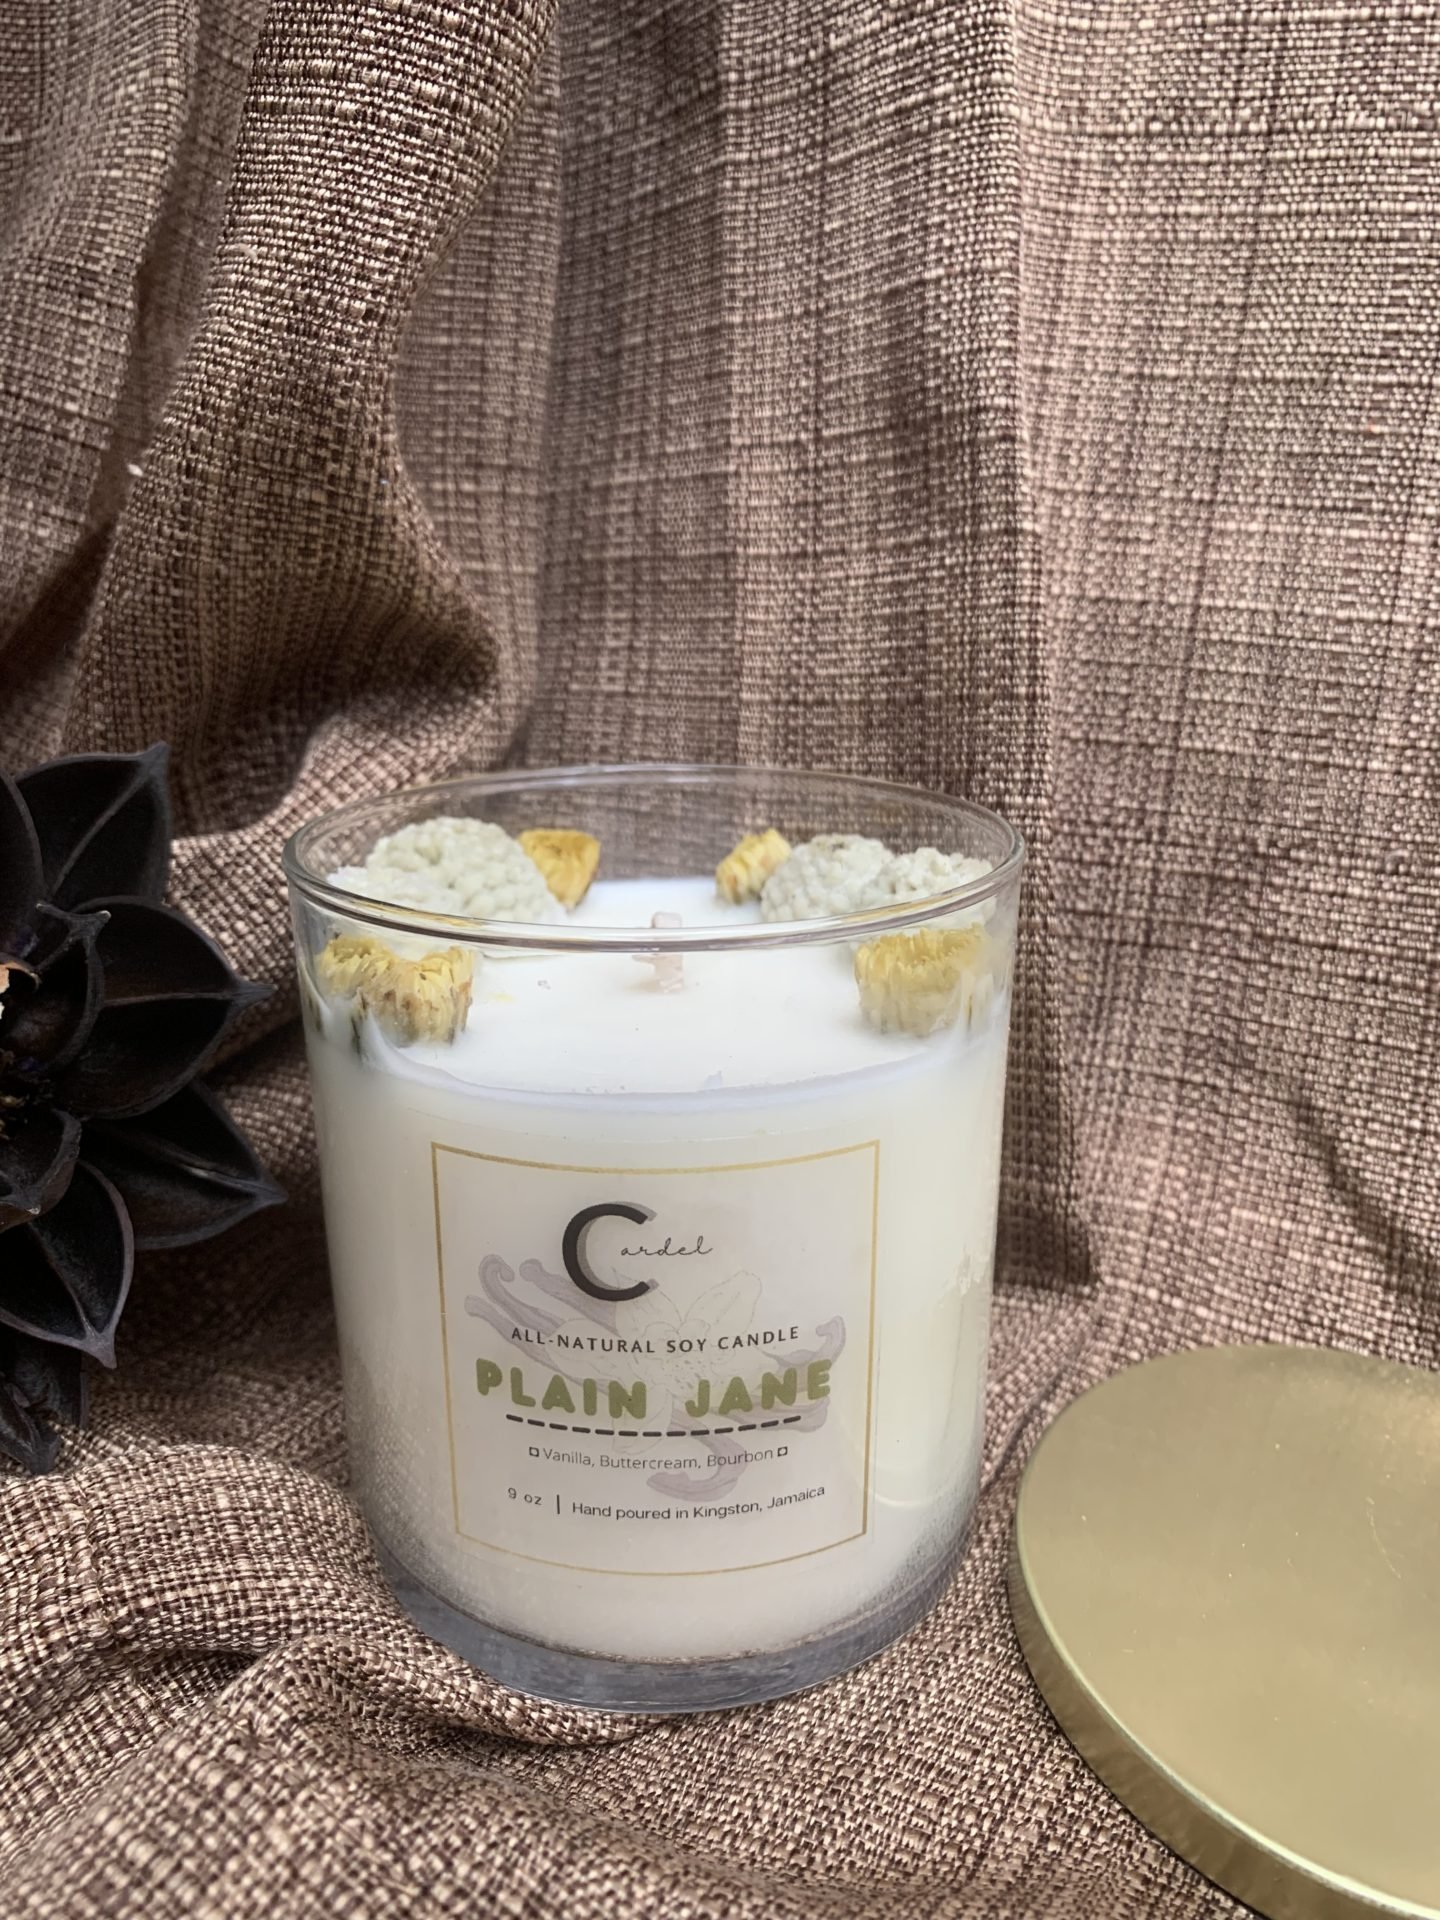 Plain jane Soy Candle